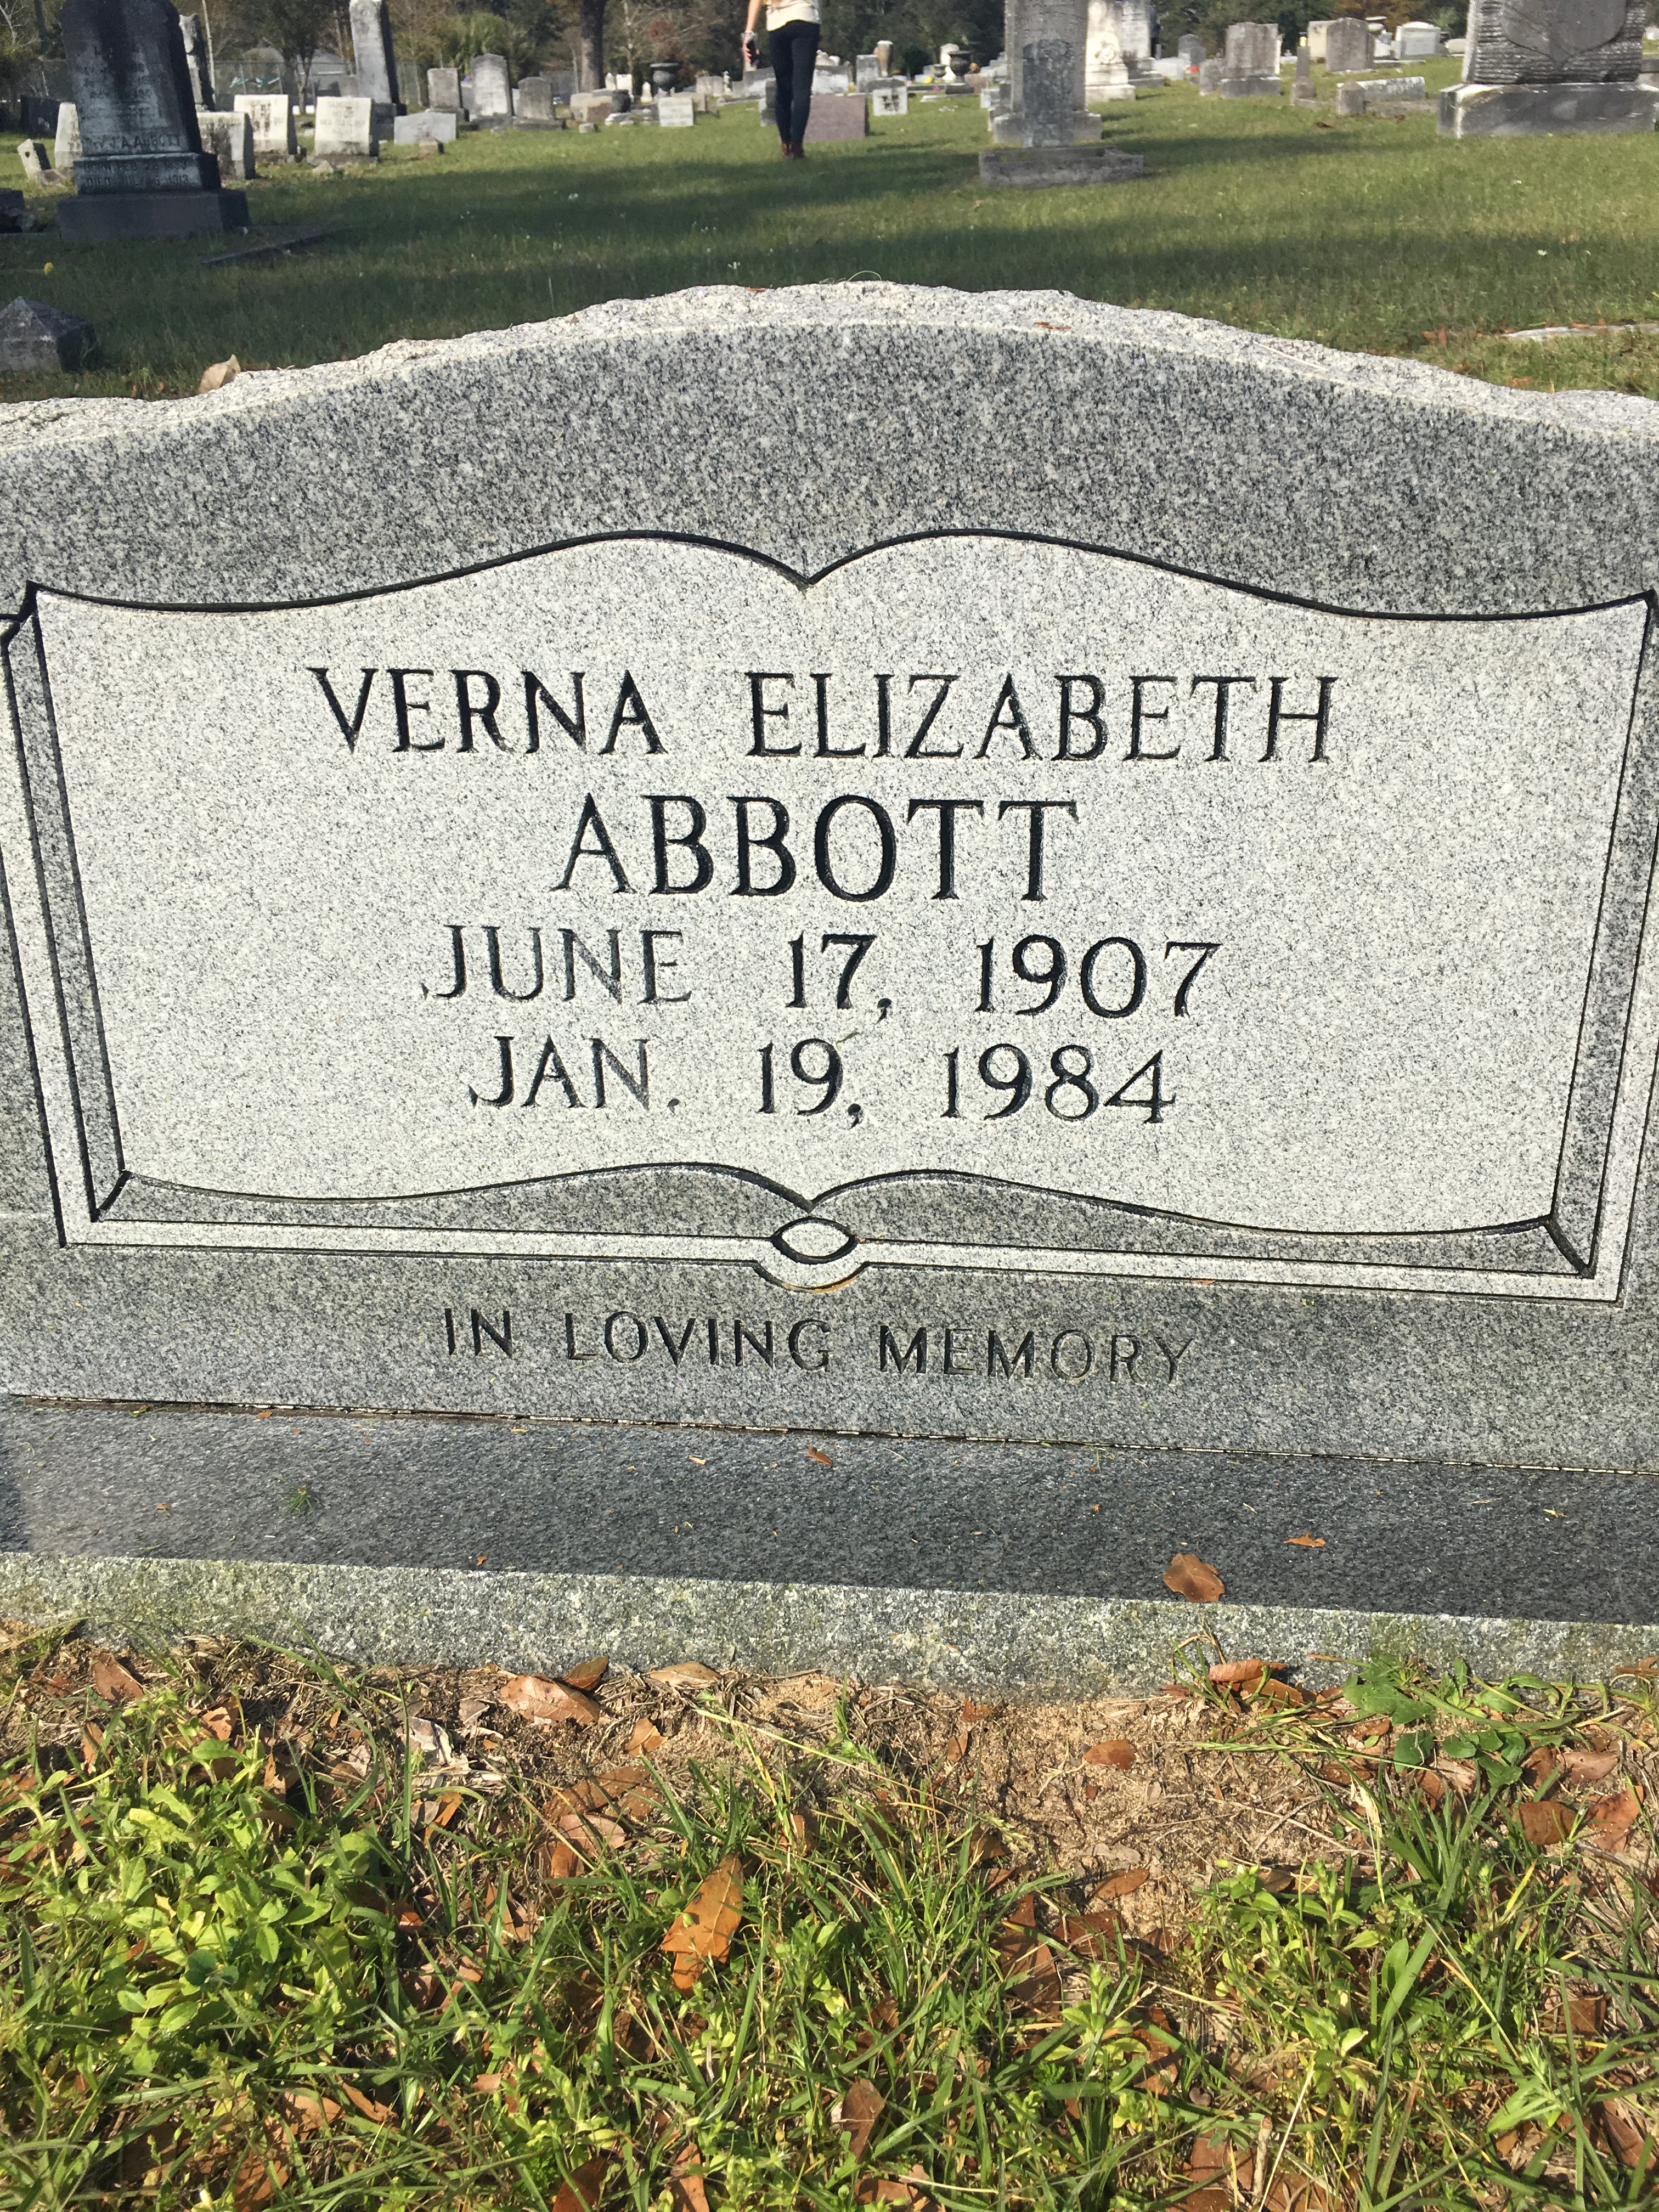 Verna Elizabeth Abbot